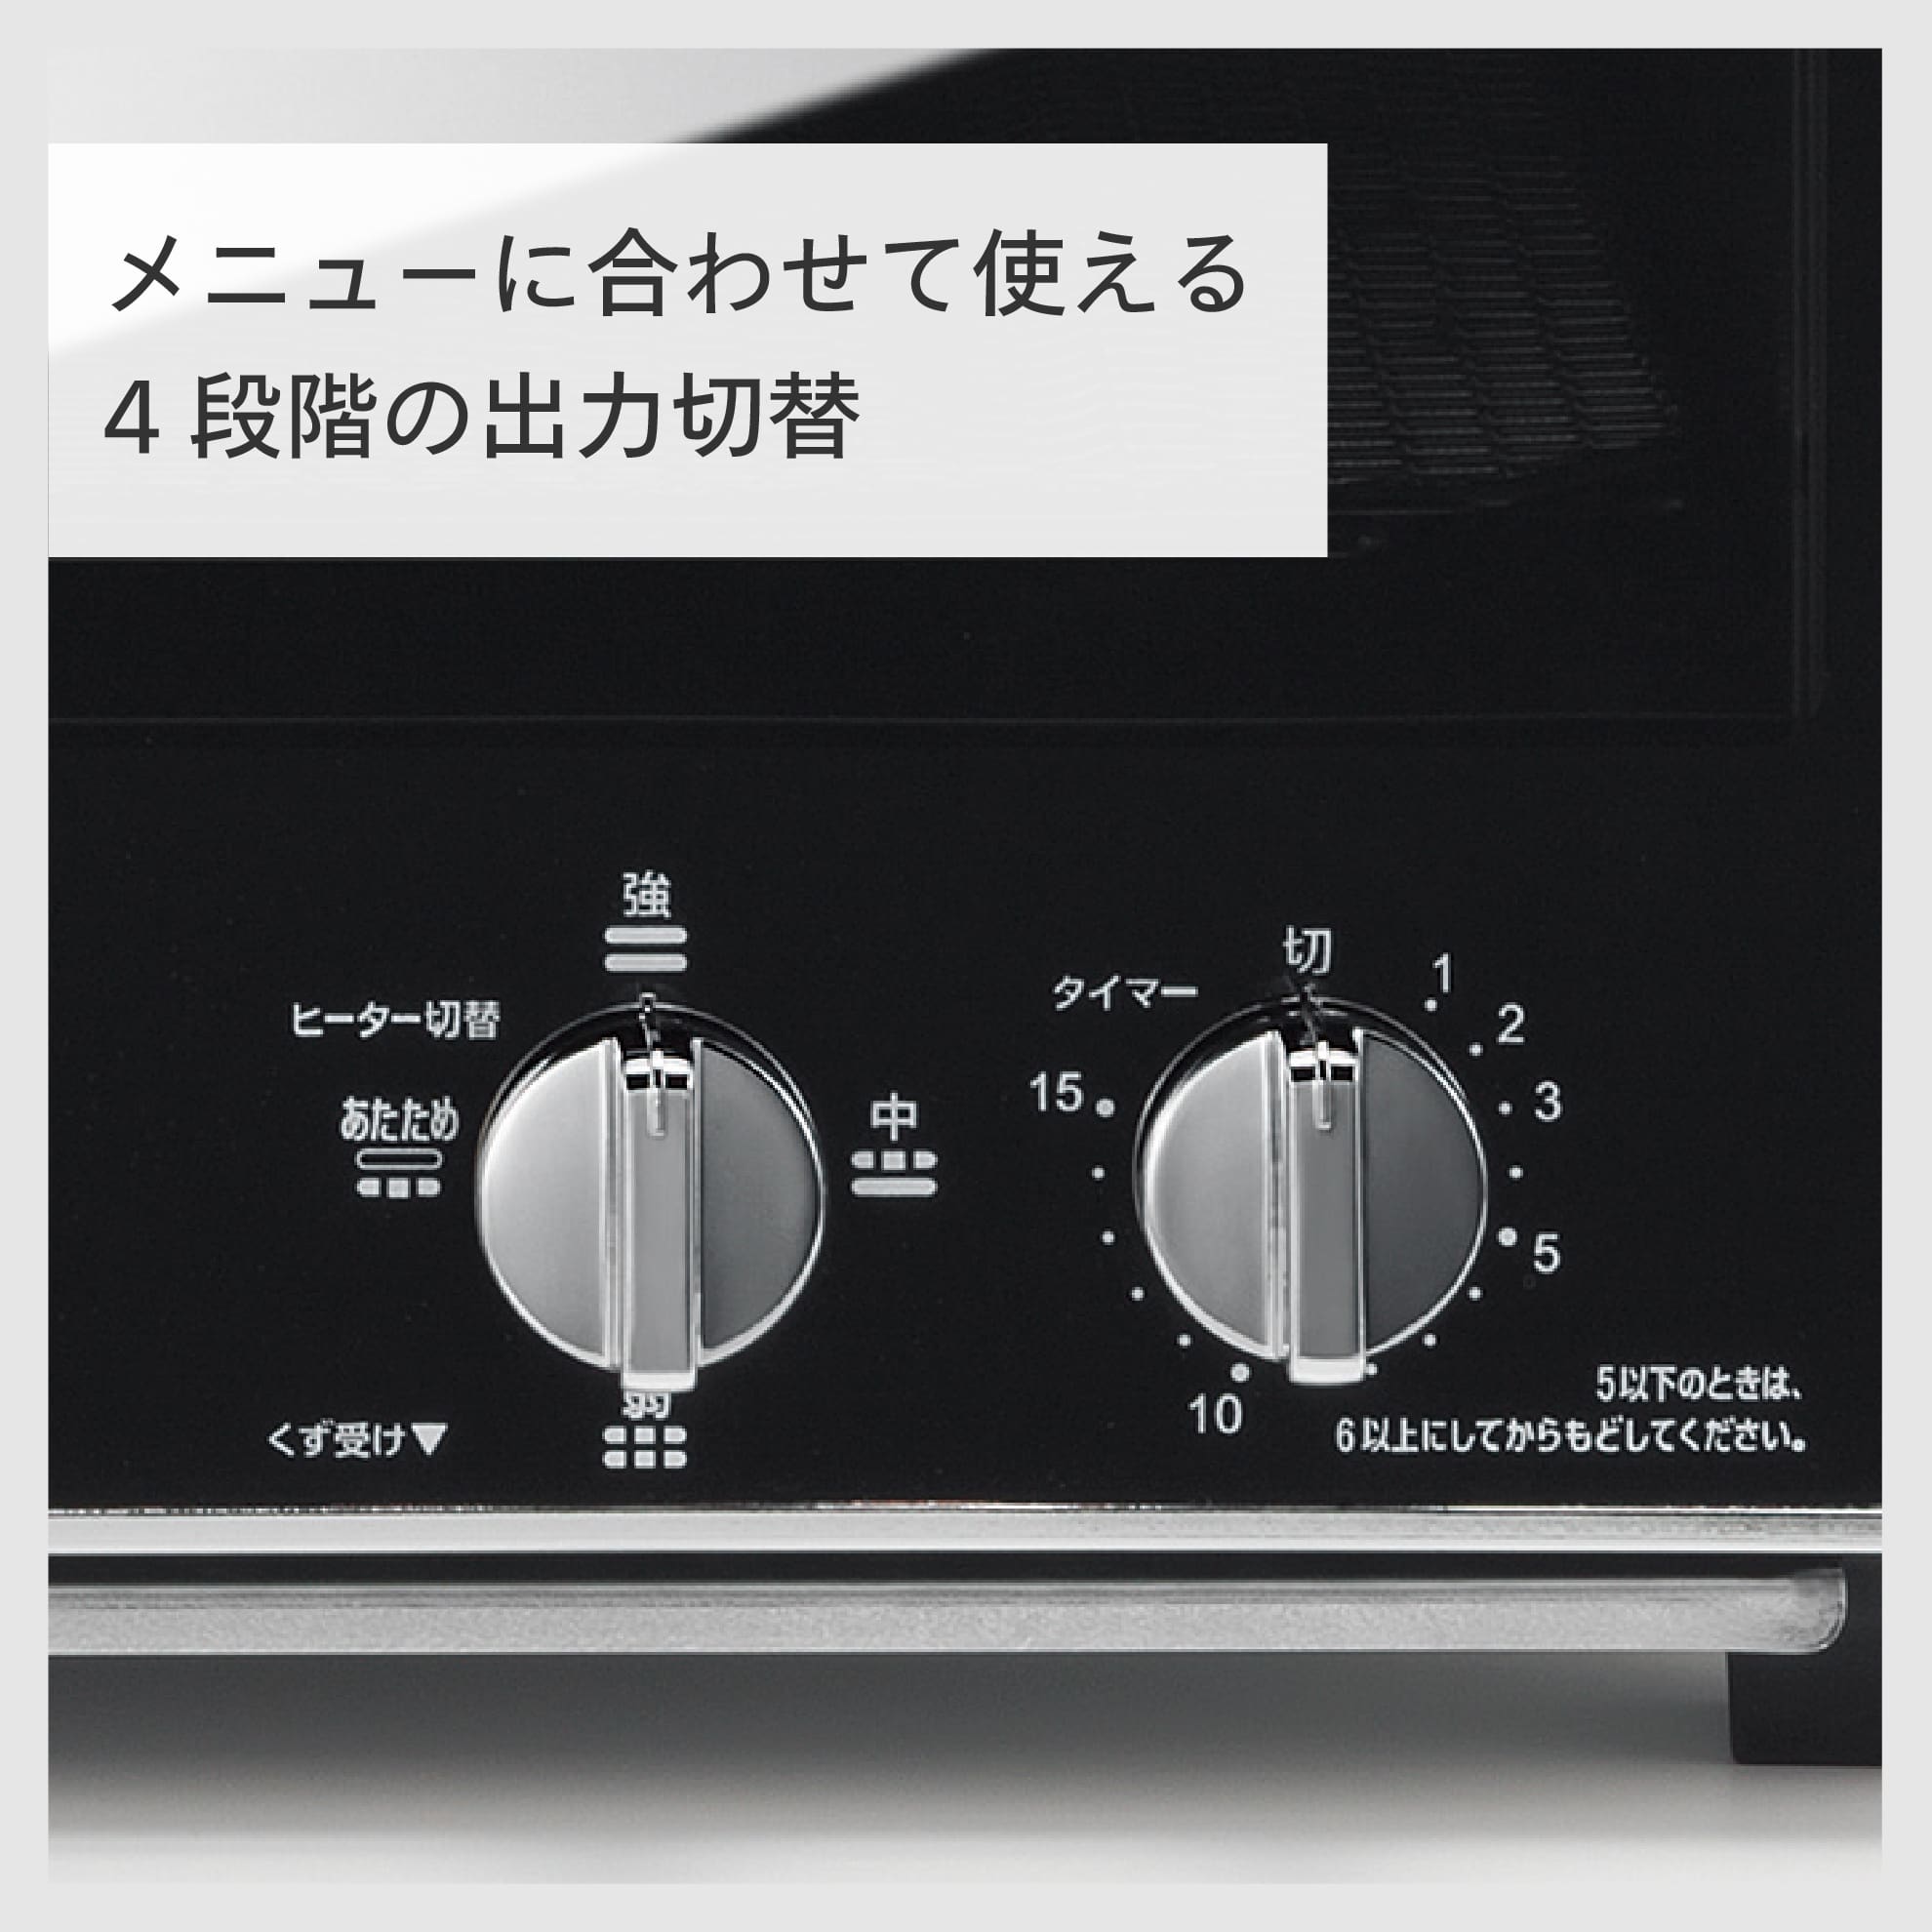 キッチン家電 ツインバード トースター オーブントースター 4枚 出力切替 (300W~1200W) ミラーガラス ブラック TS-D047B